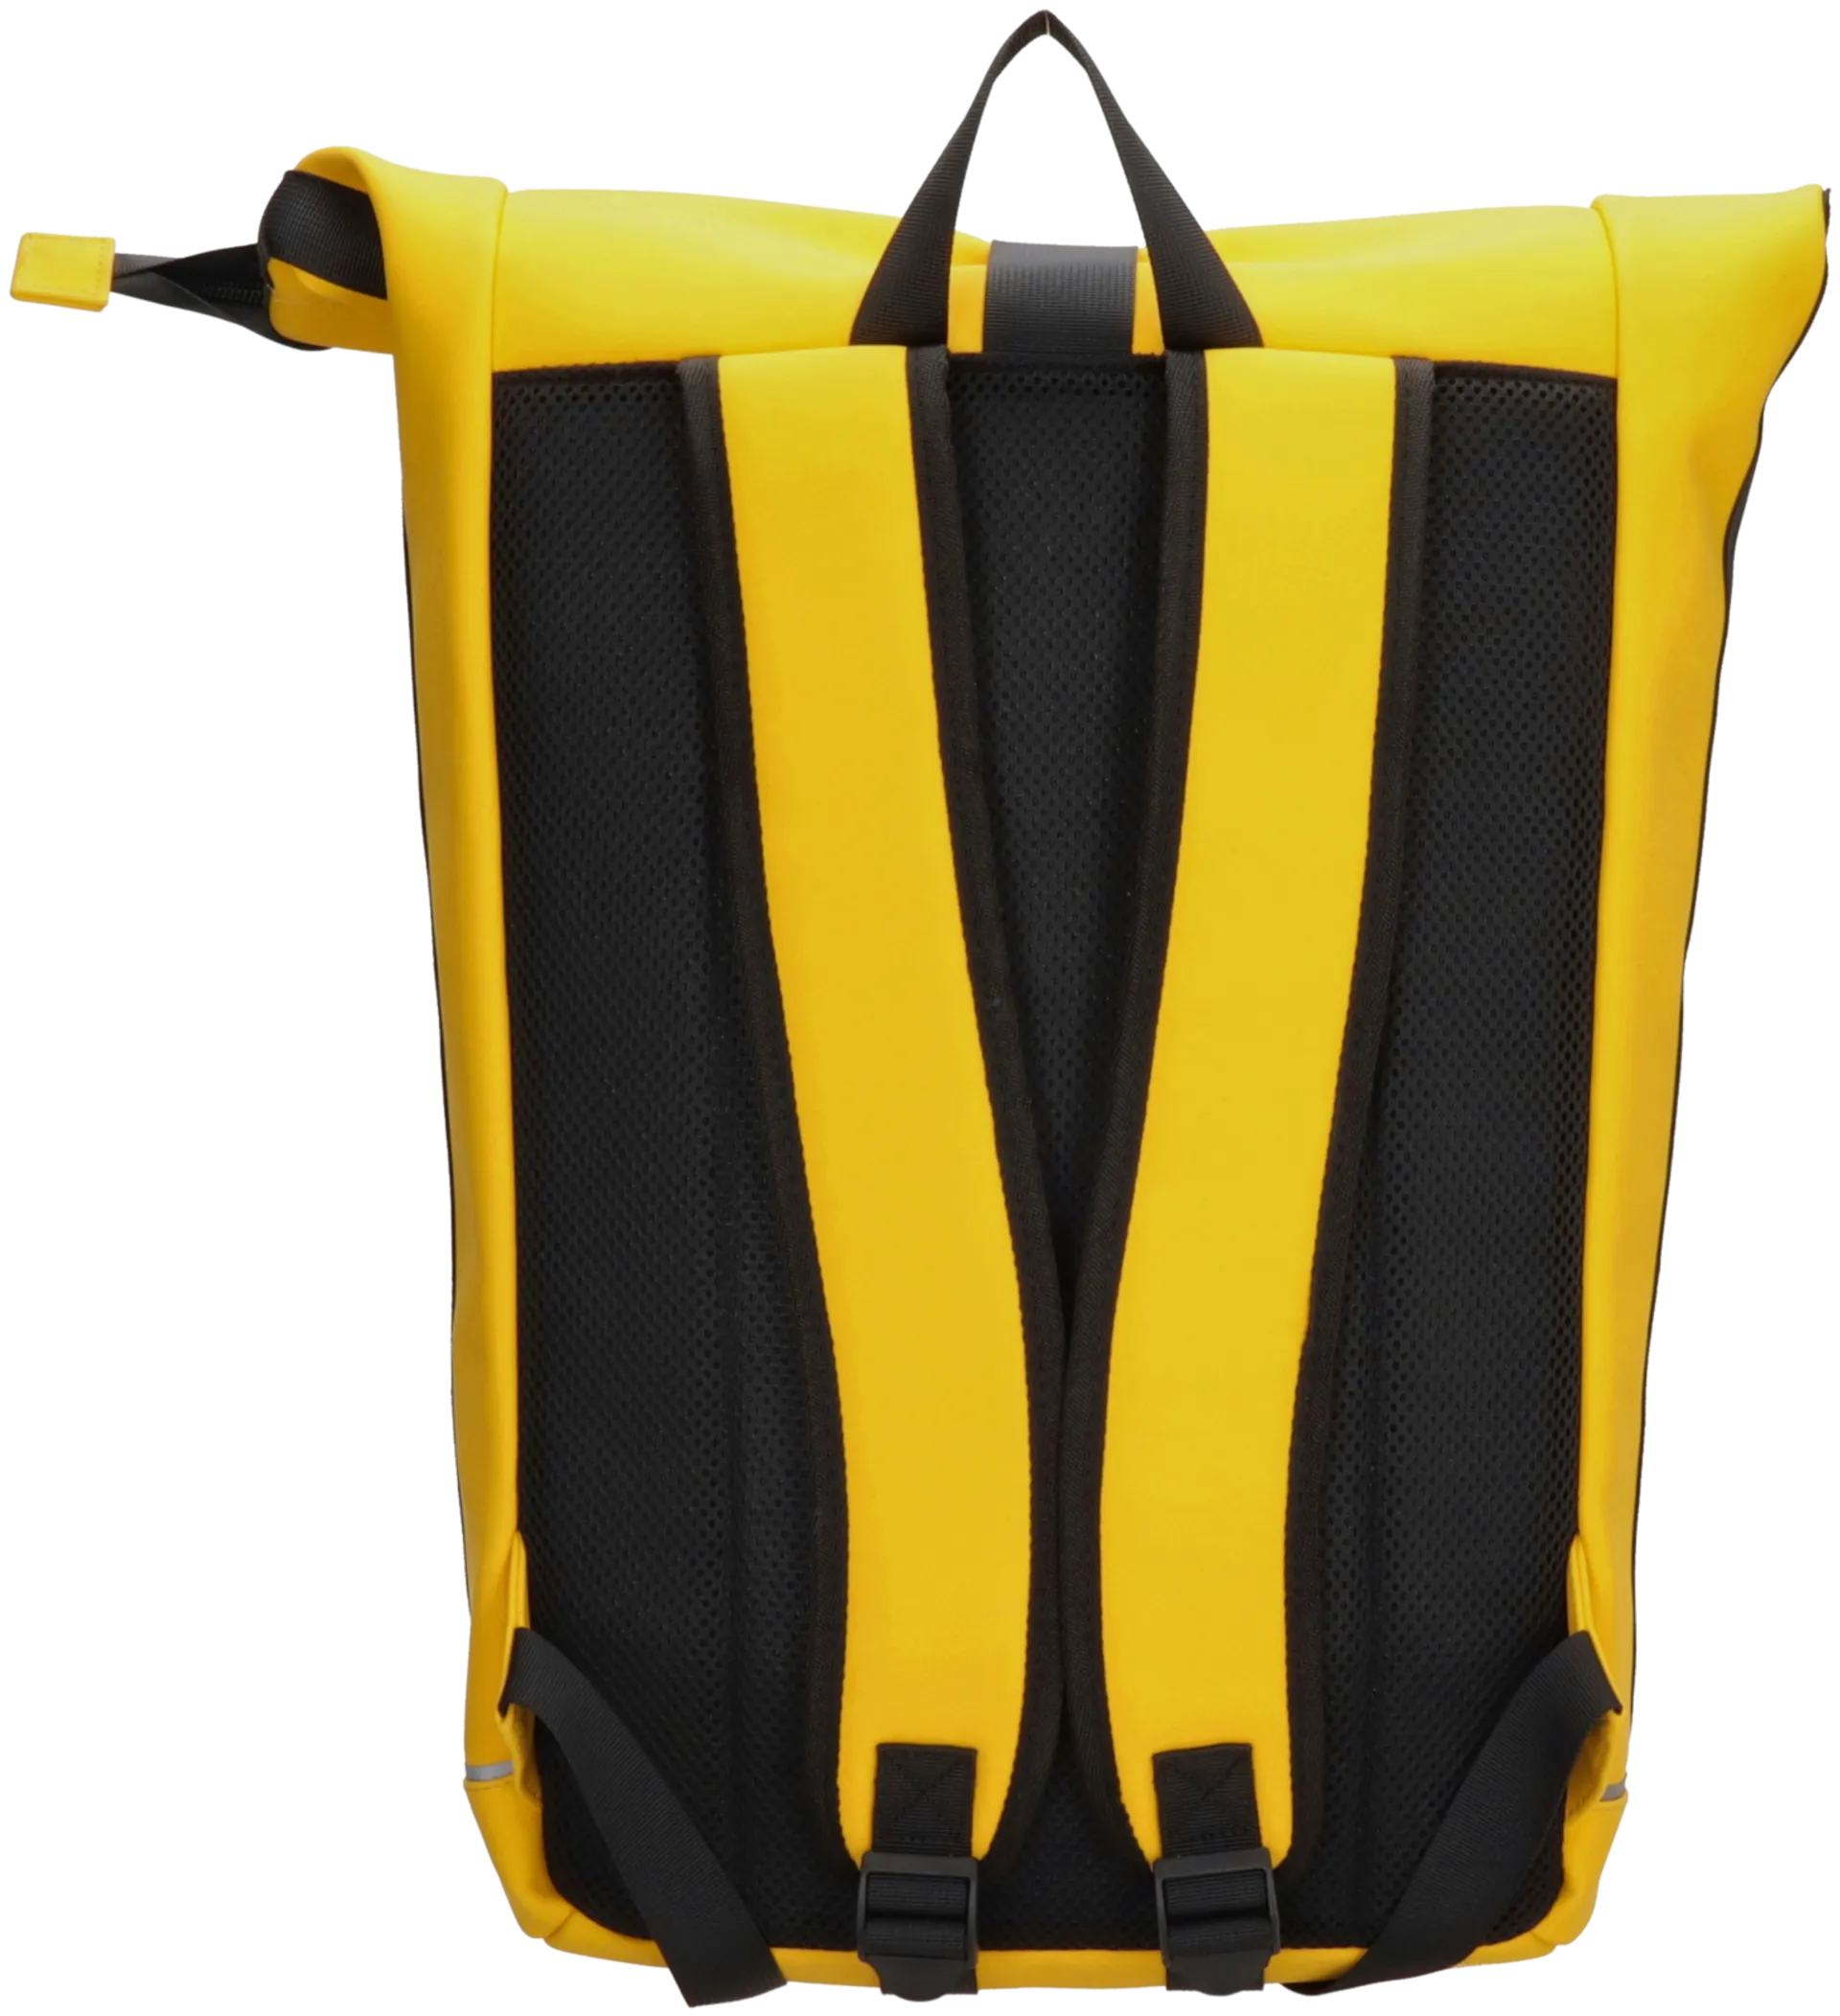 waterproof backpack - 3